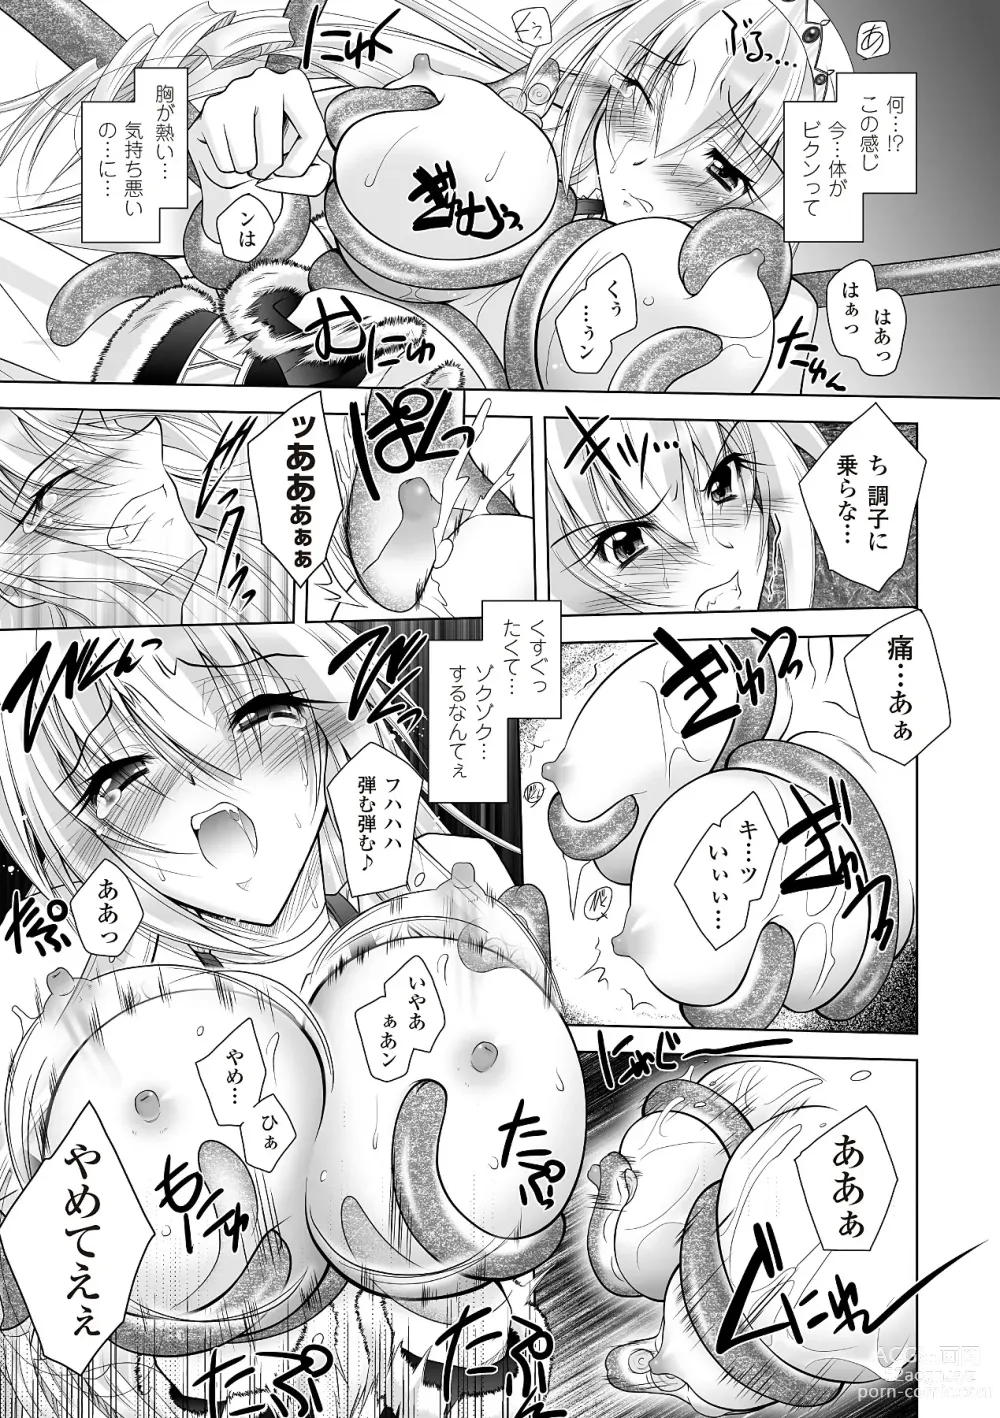 Page 159 of manga Datenshi-tachi no Rhapsody - Fallen Angels Rhapsody